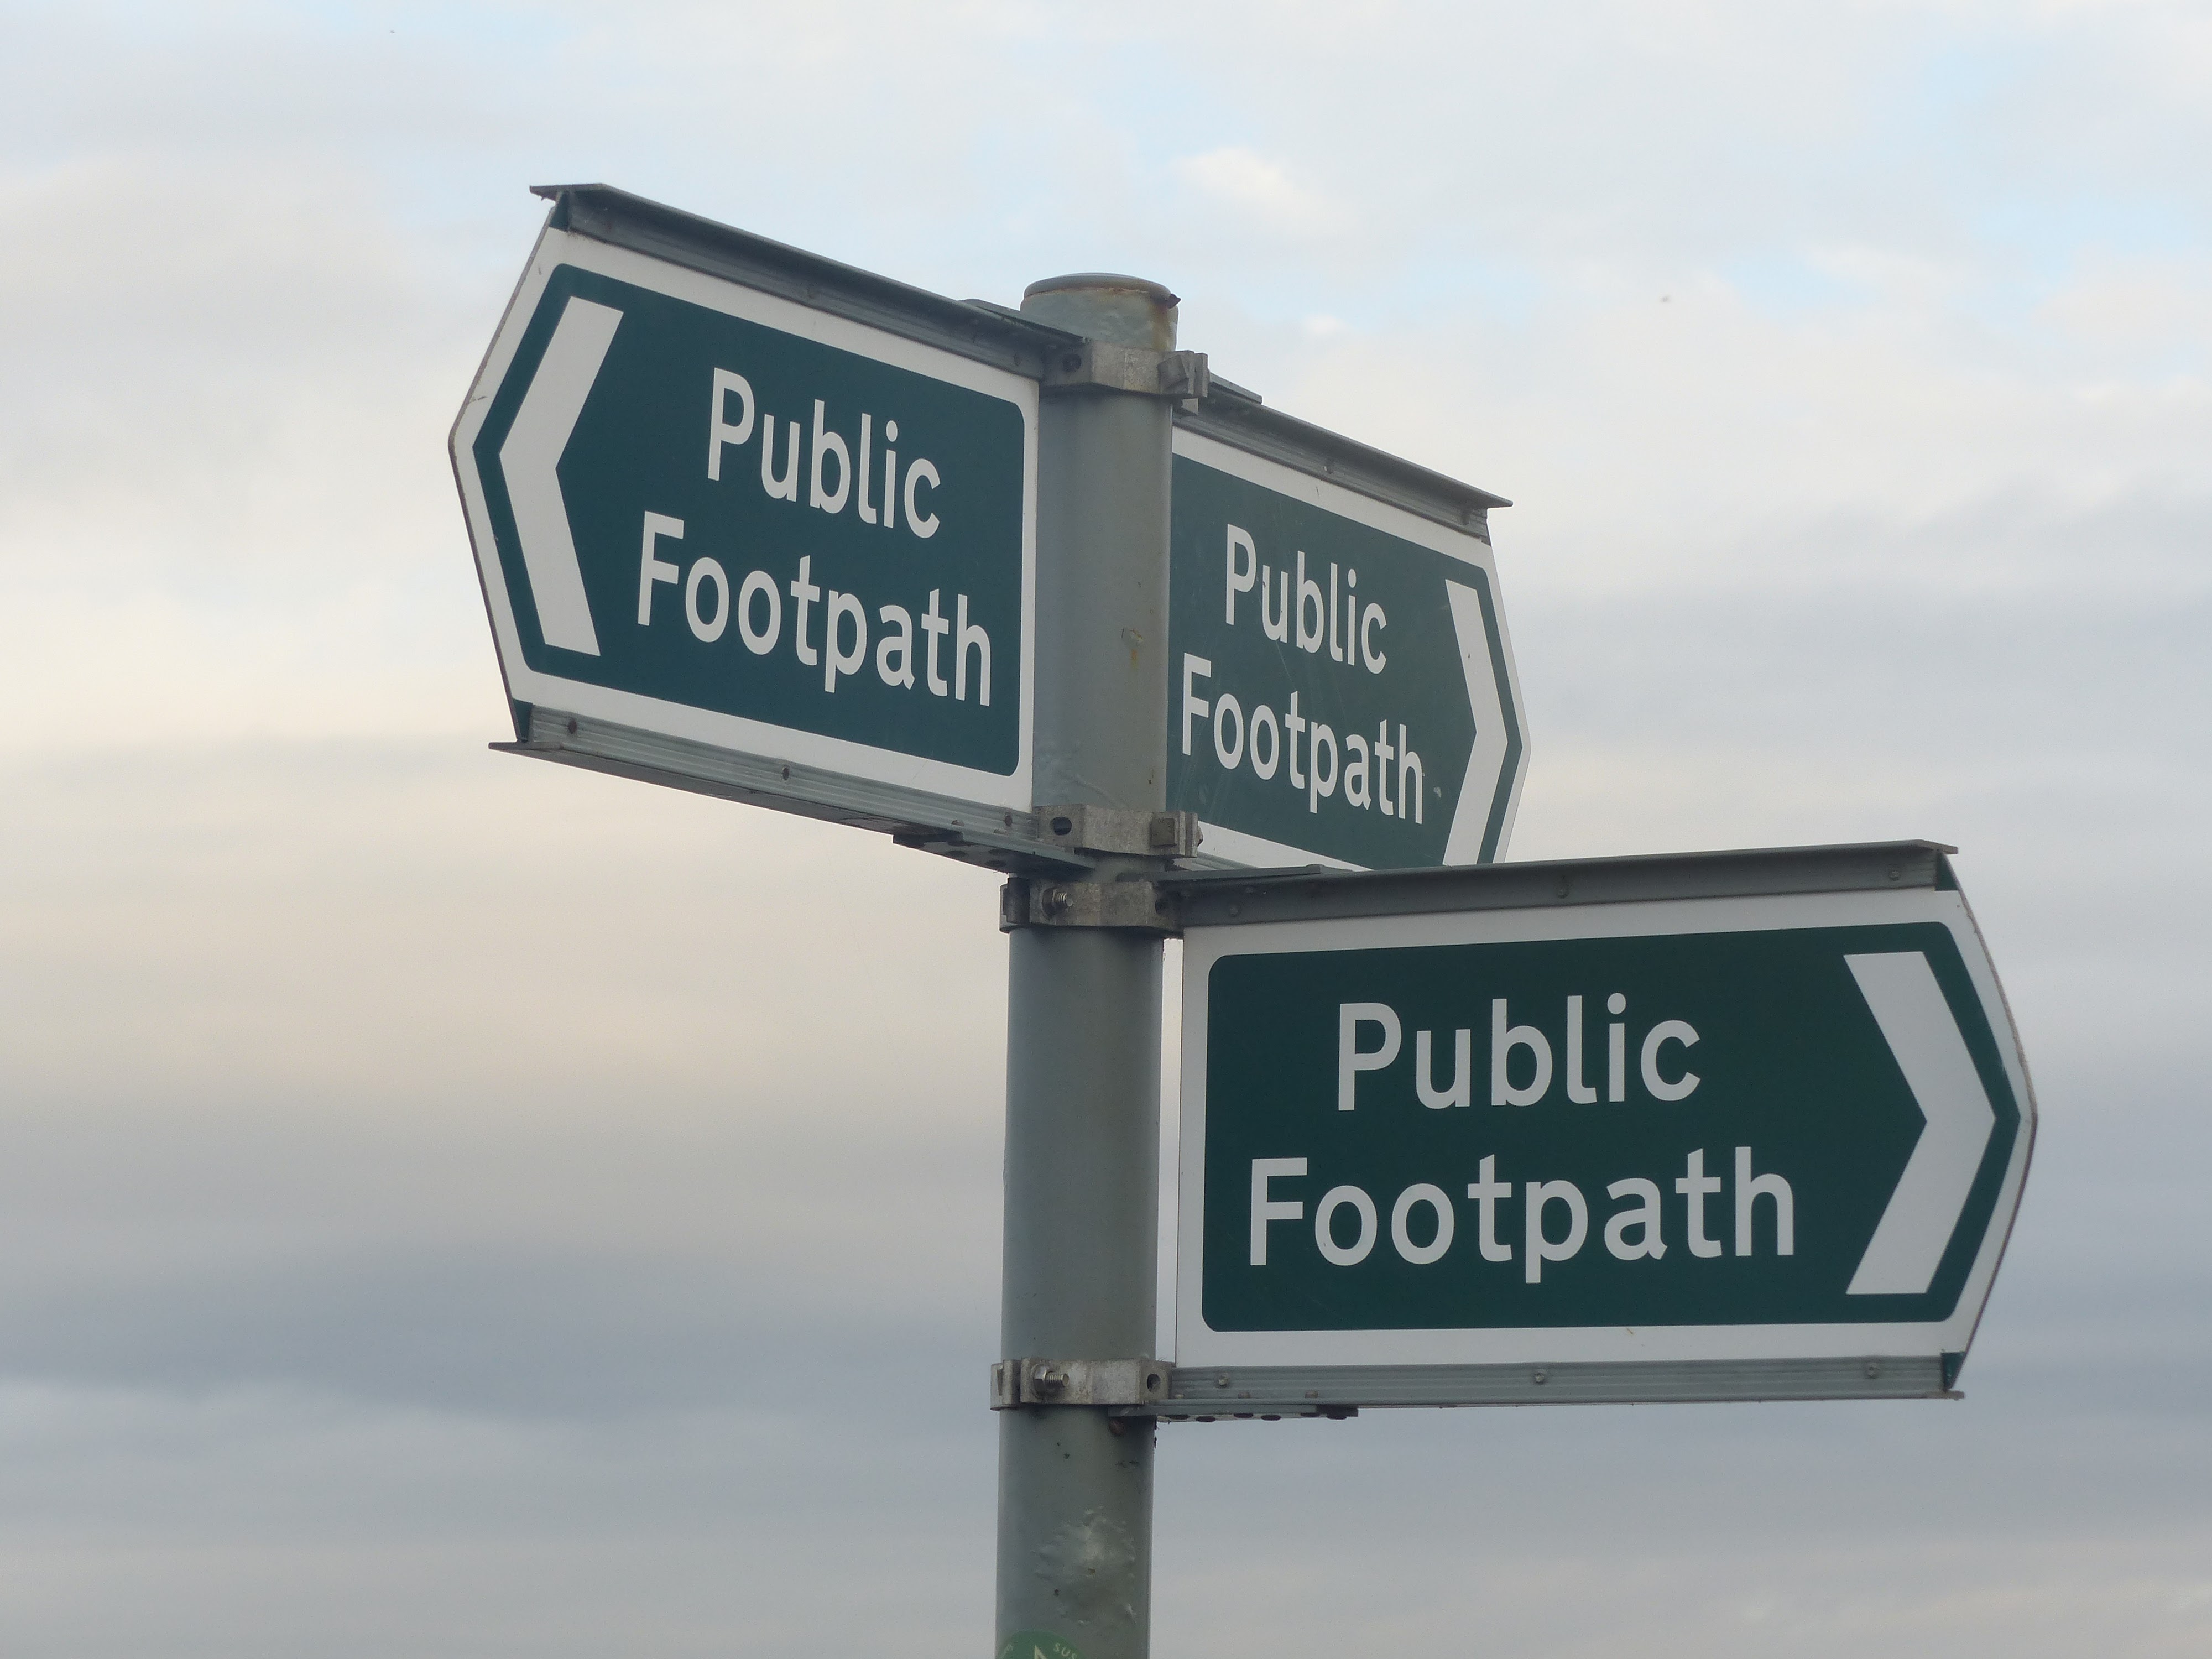 Three footpath signs